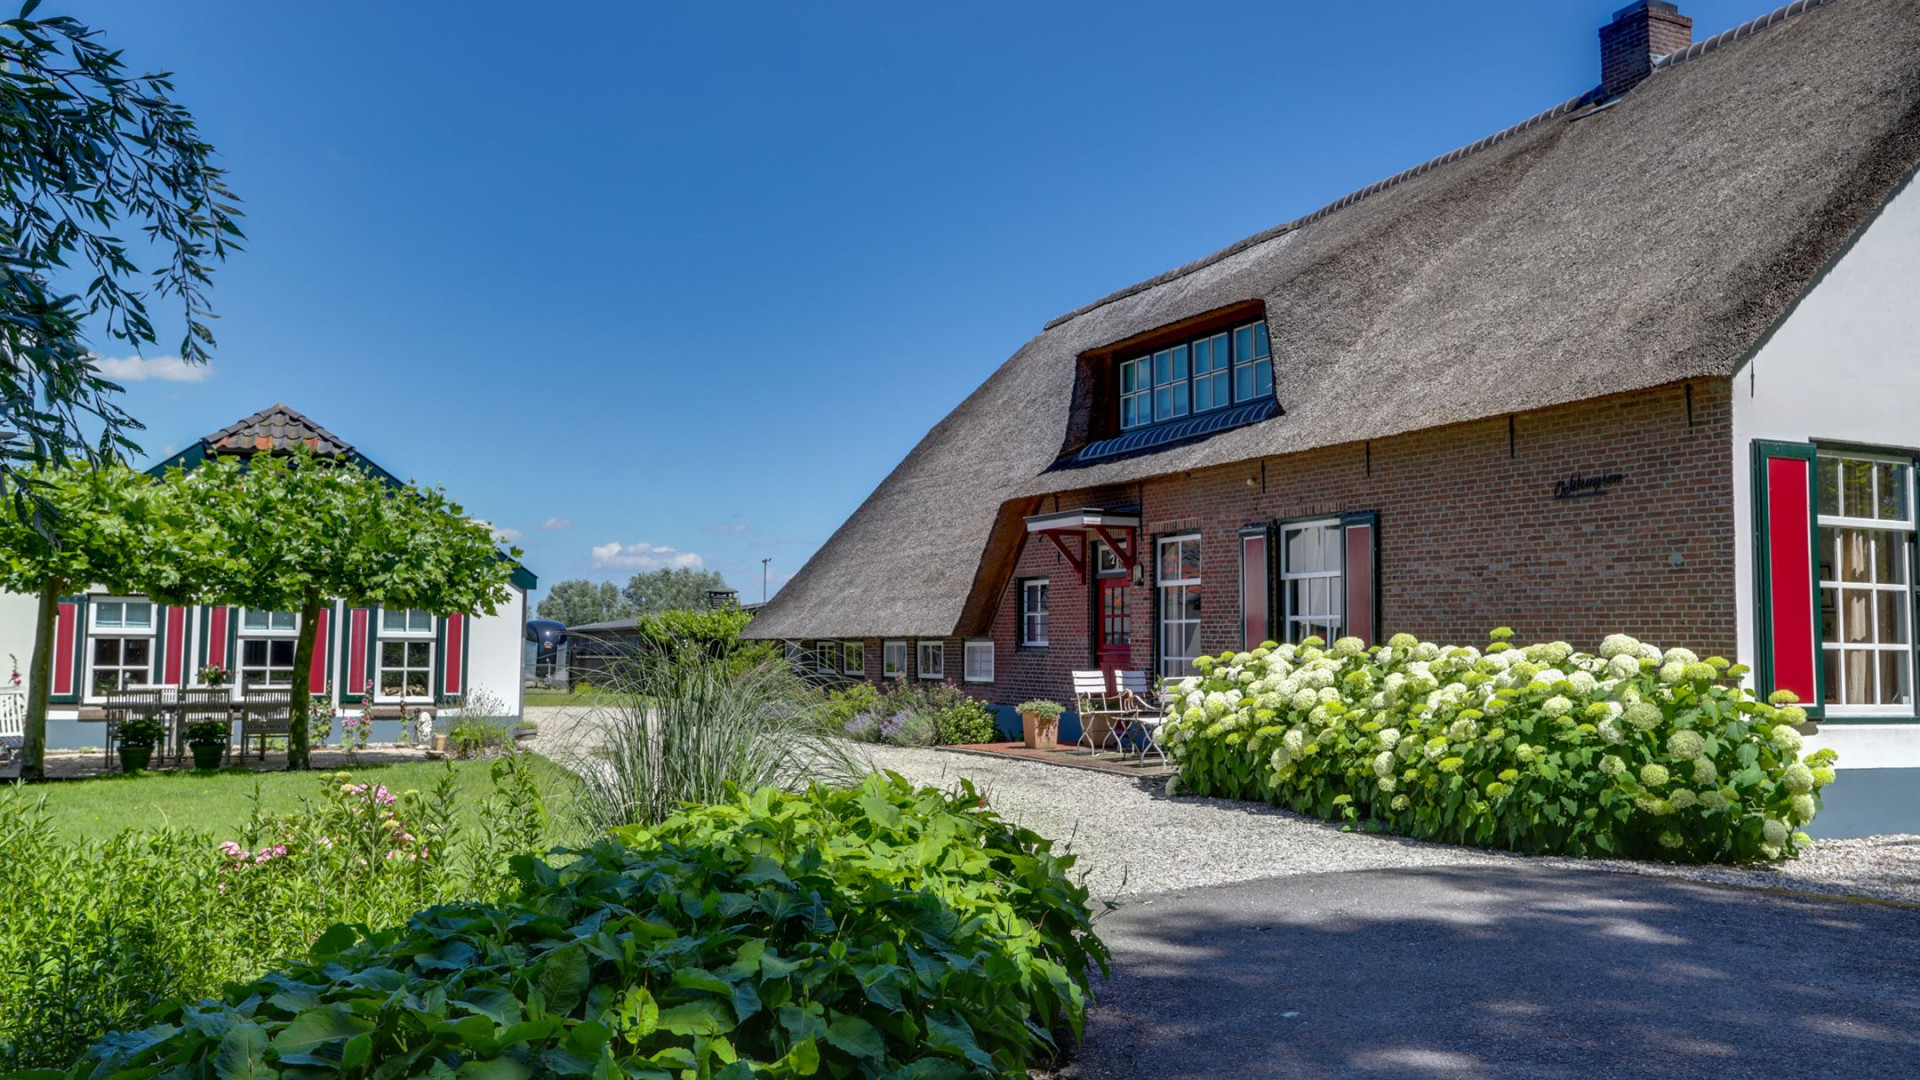 Ivo Niehe koopt deze prachtige woonboerderij. Zie foto's 29